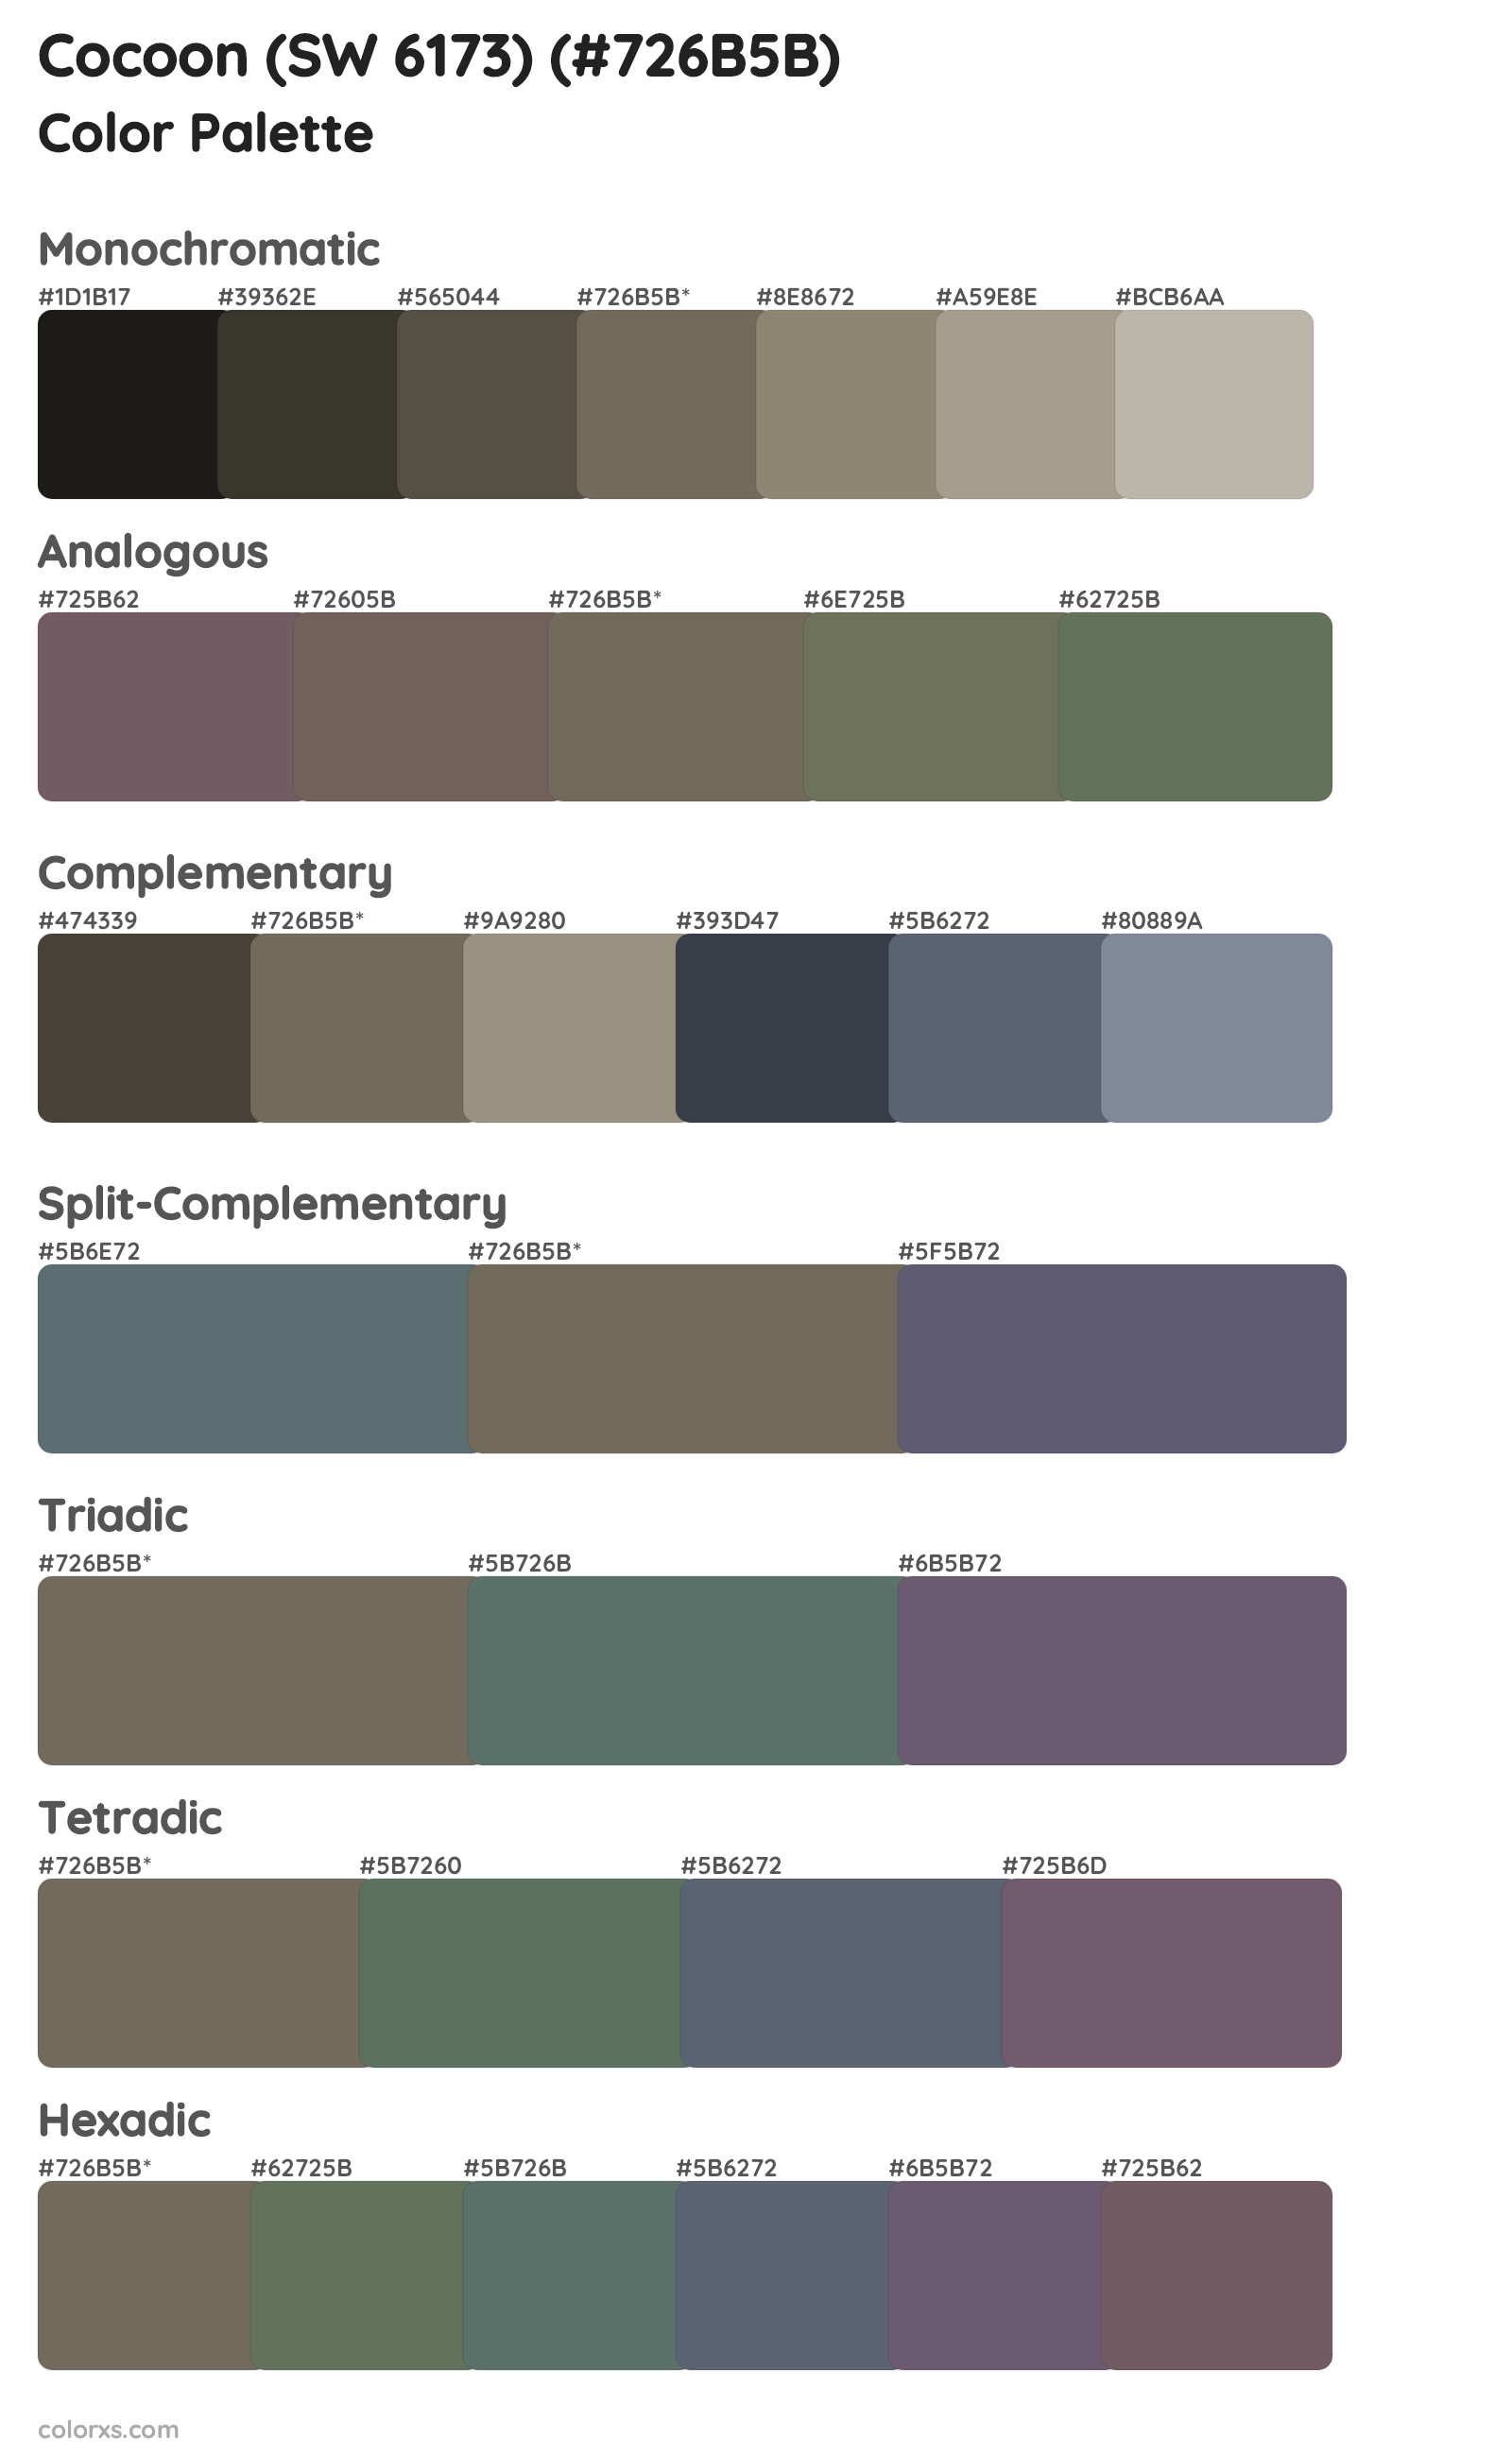 Cocoon (SW 6173) Color Scheme Palettes